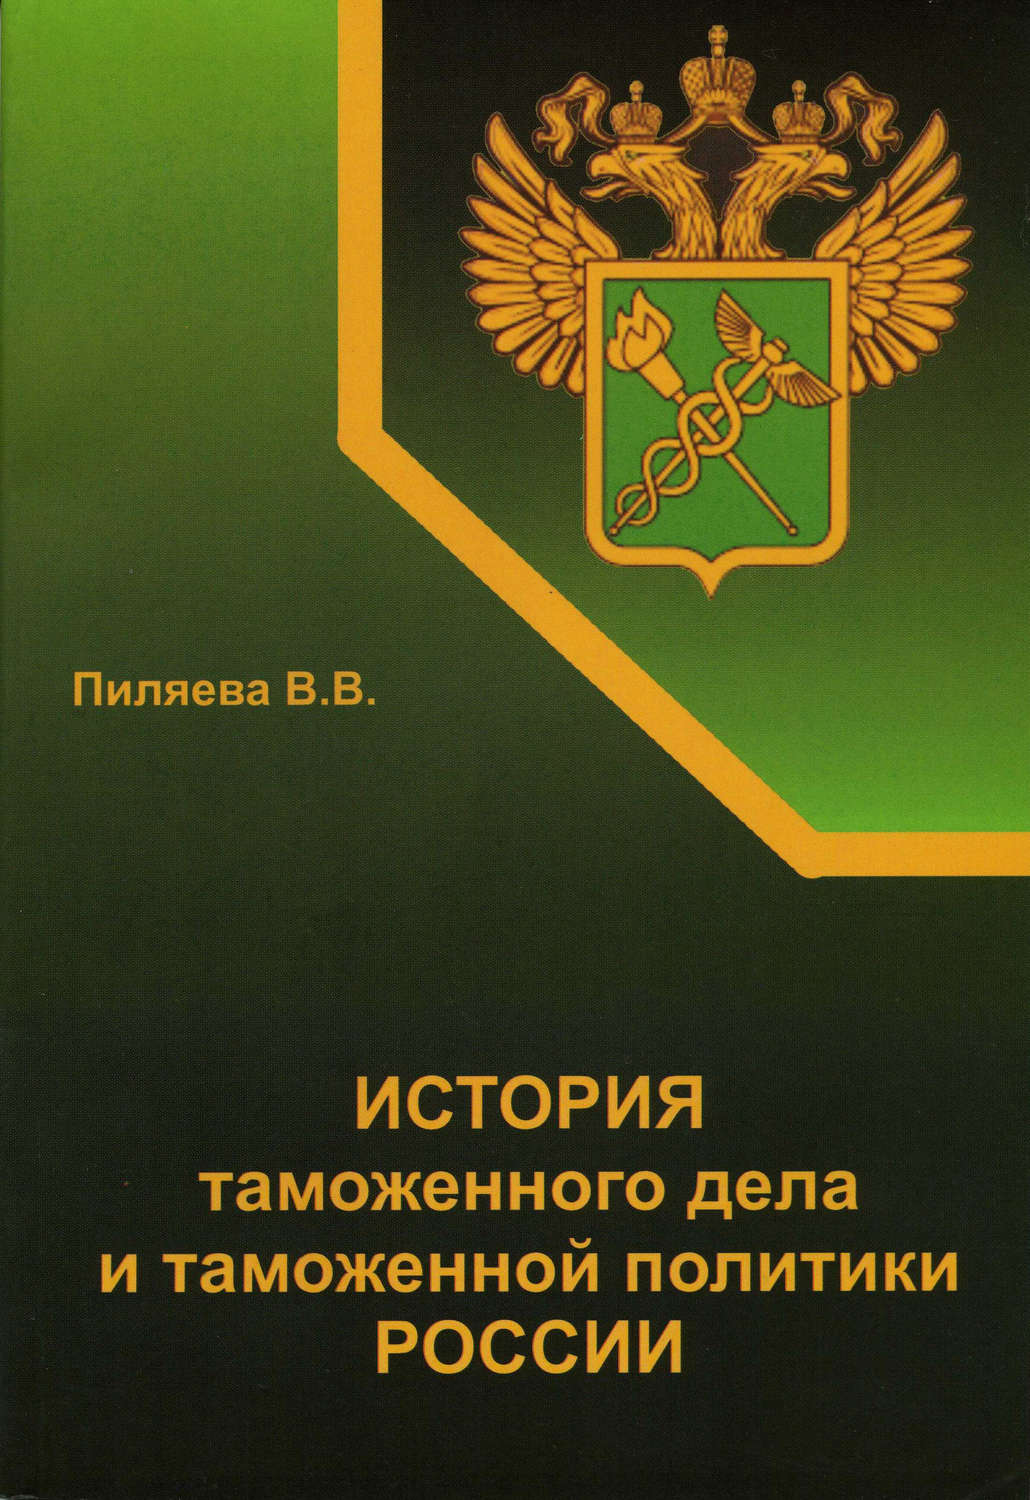 Символы таможенной службы россии книга скачать